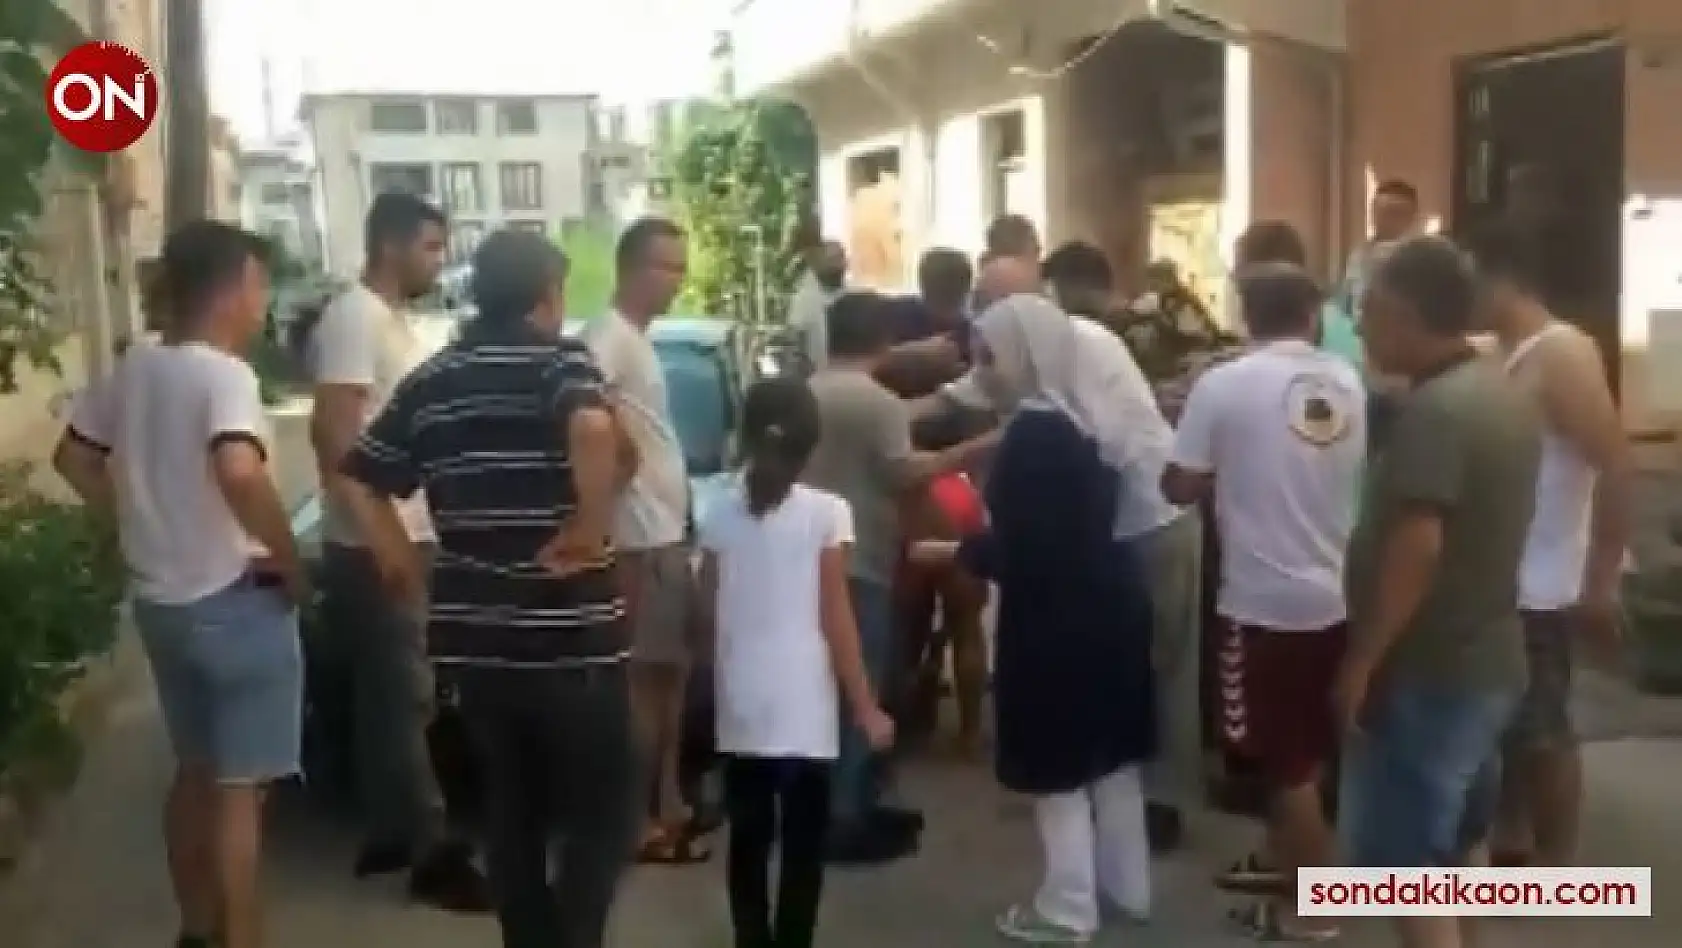 Bursa'da hırsızlık yapmak için girdiği evde kız çocuğuna sandalye ile saldırdı